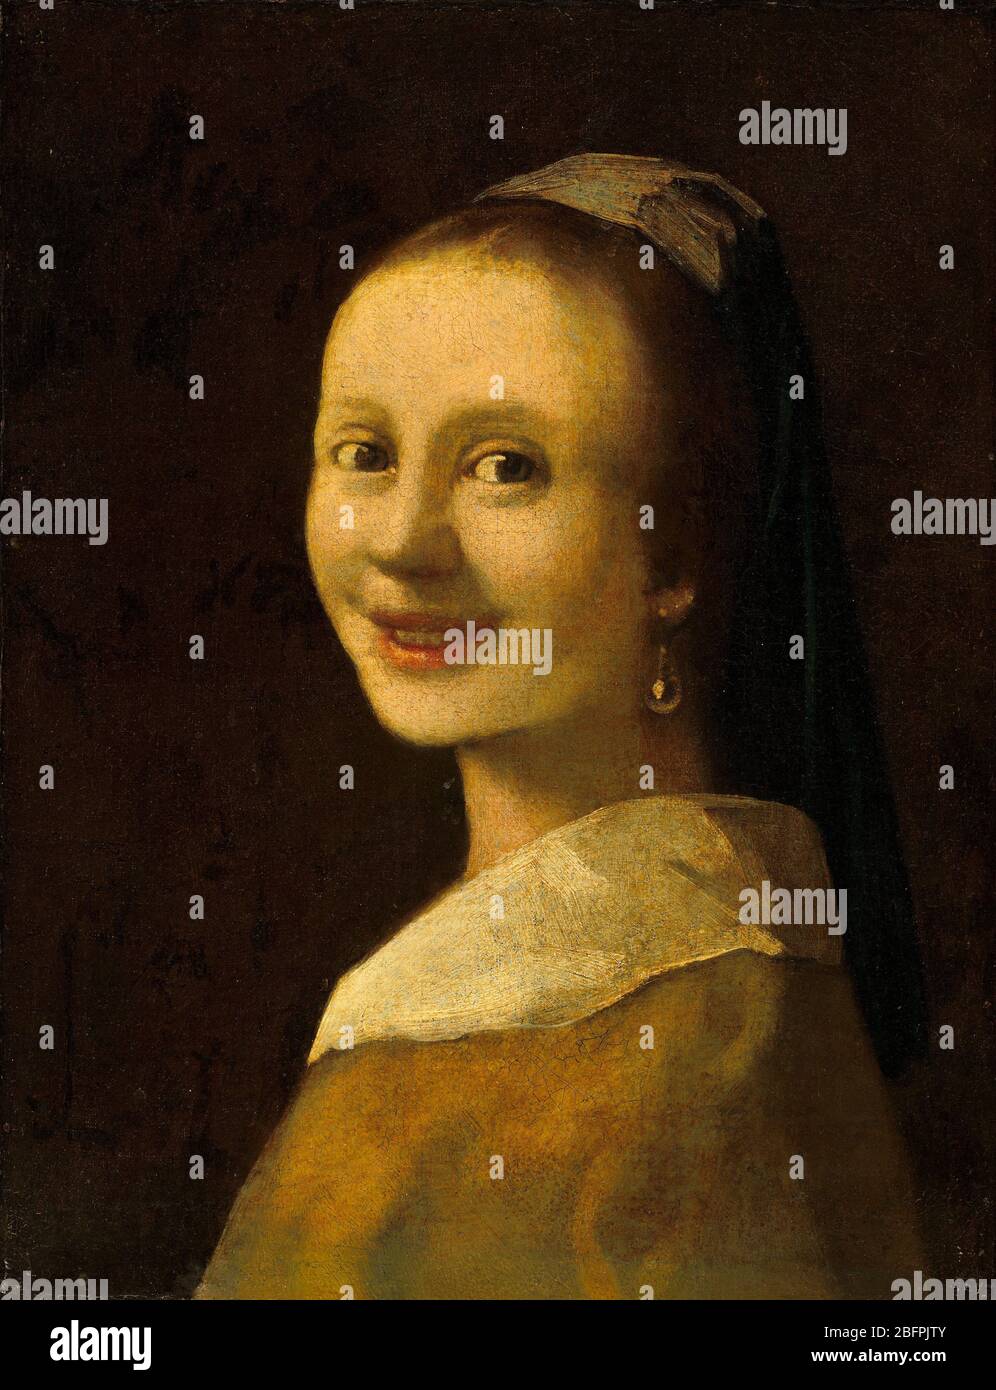 Smiling Girl, forgery most likely painted by Han van Meegeren  Anonymous Imitator of Johannes Vermeer  fake vermeer Stock Photo